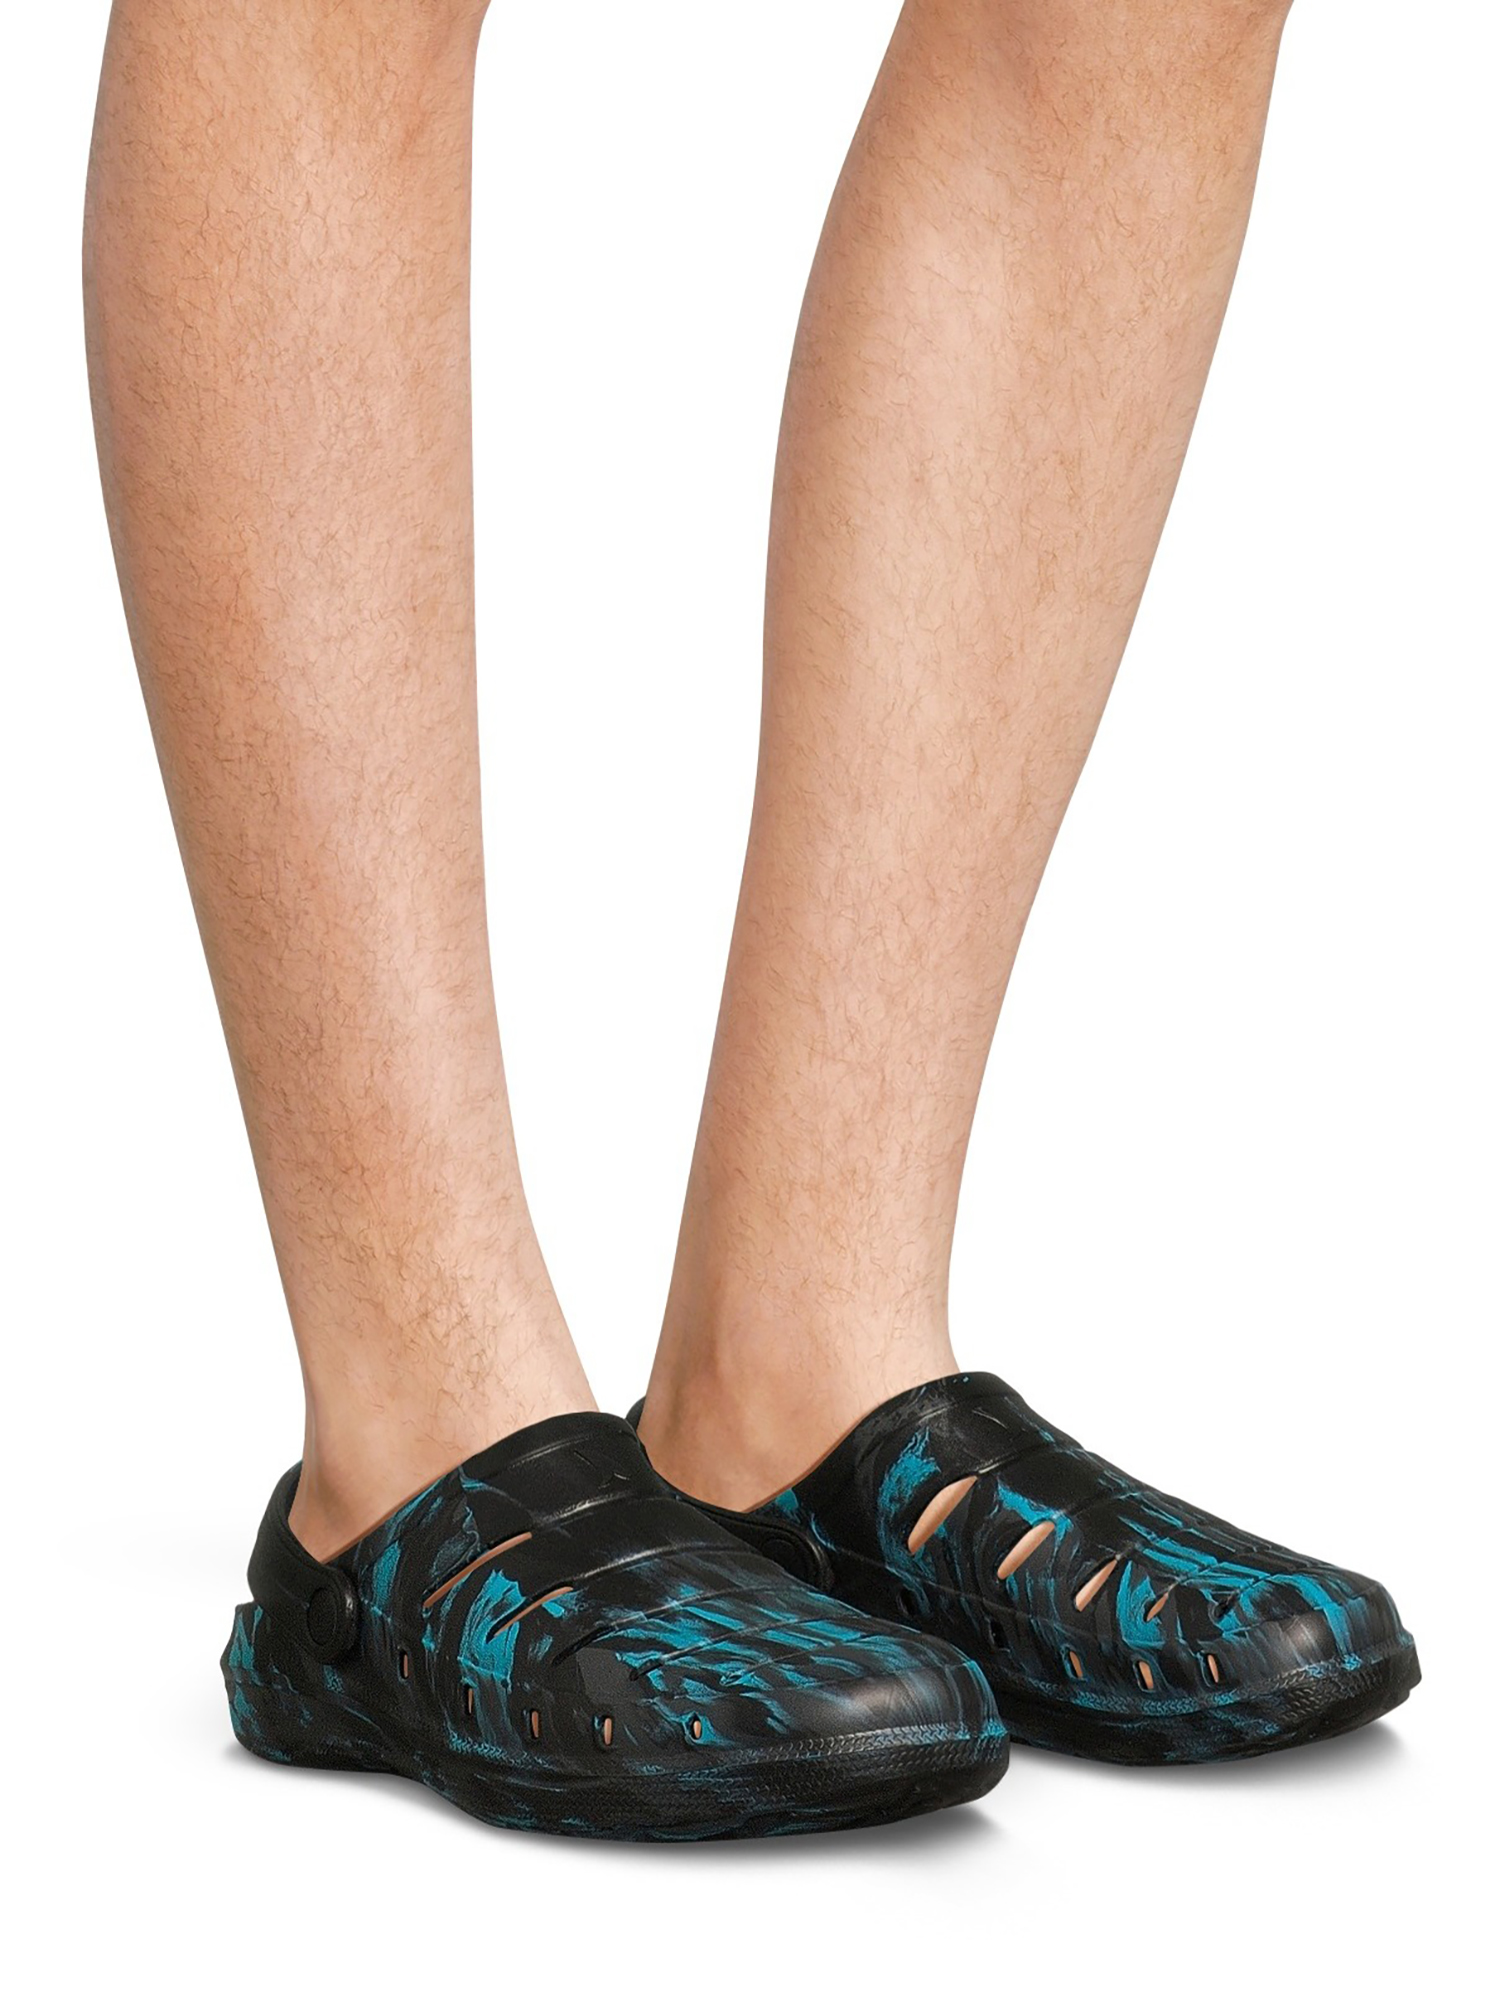 Rugged Shark Men's Comfort Clog Sandals - image 3 of 4